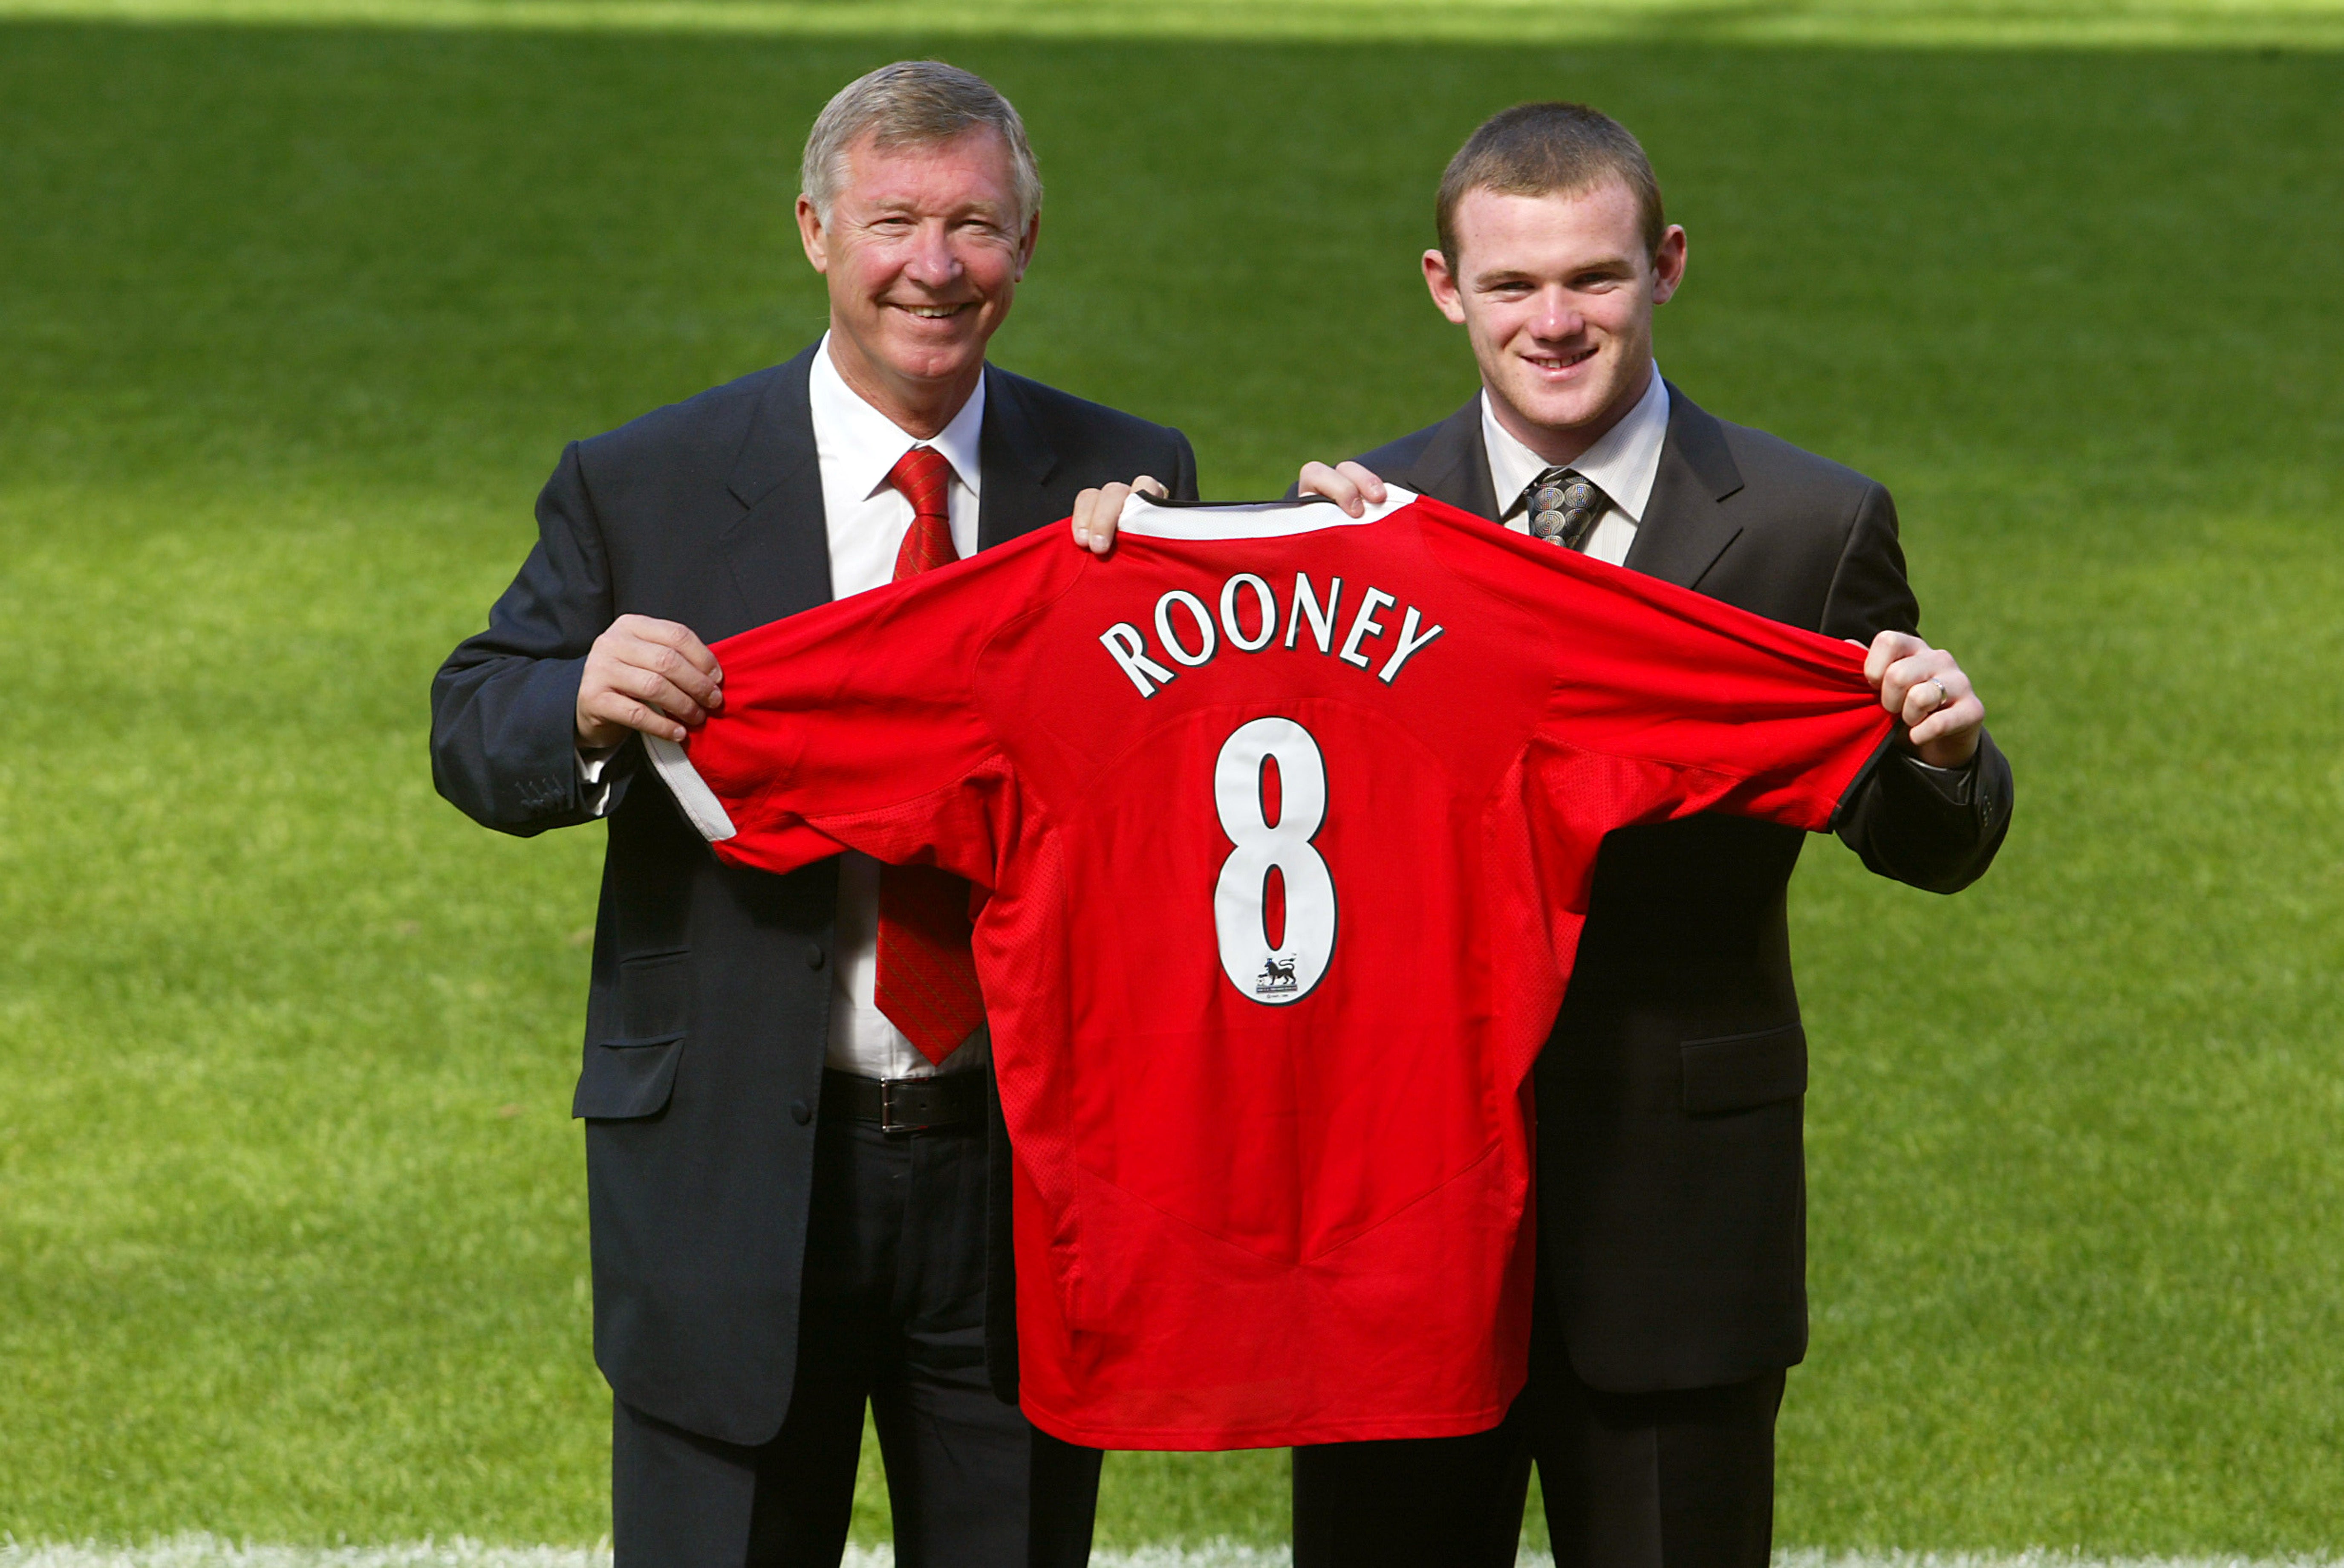 Sir Alex Ferguson bought Wayne Rooney to Old Trafford (Gareth Copley/PA)